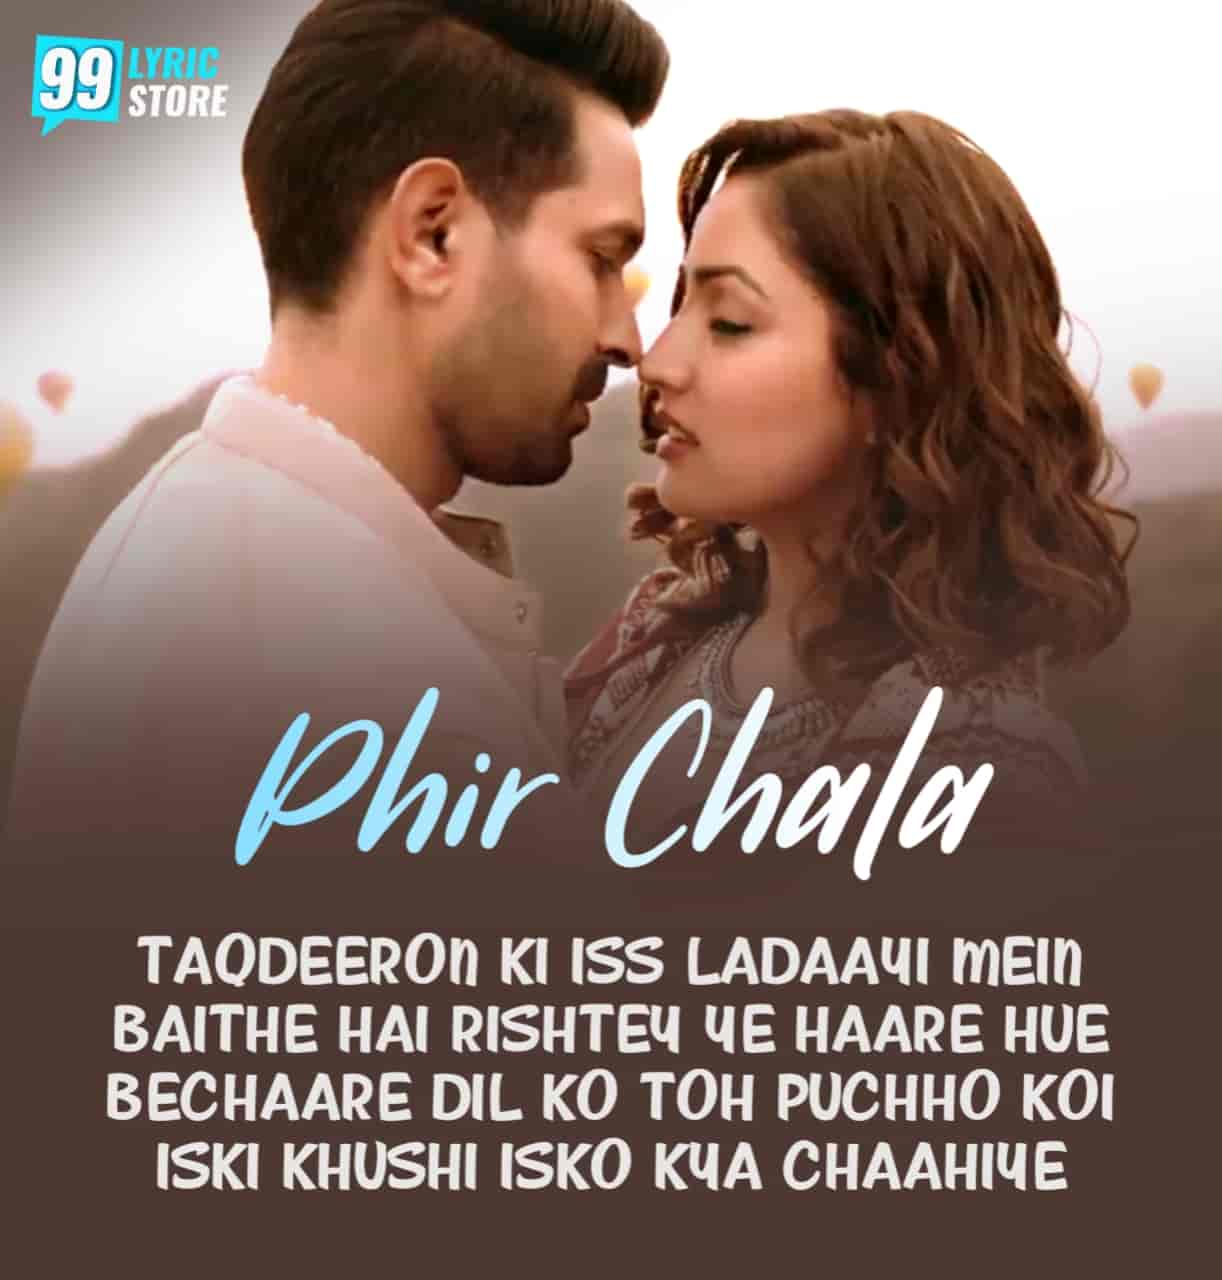 Phir Chala Hindi Song Image Features Yami Gautam and Vikrant Sung By Jubin Nautiyal